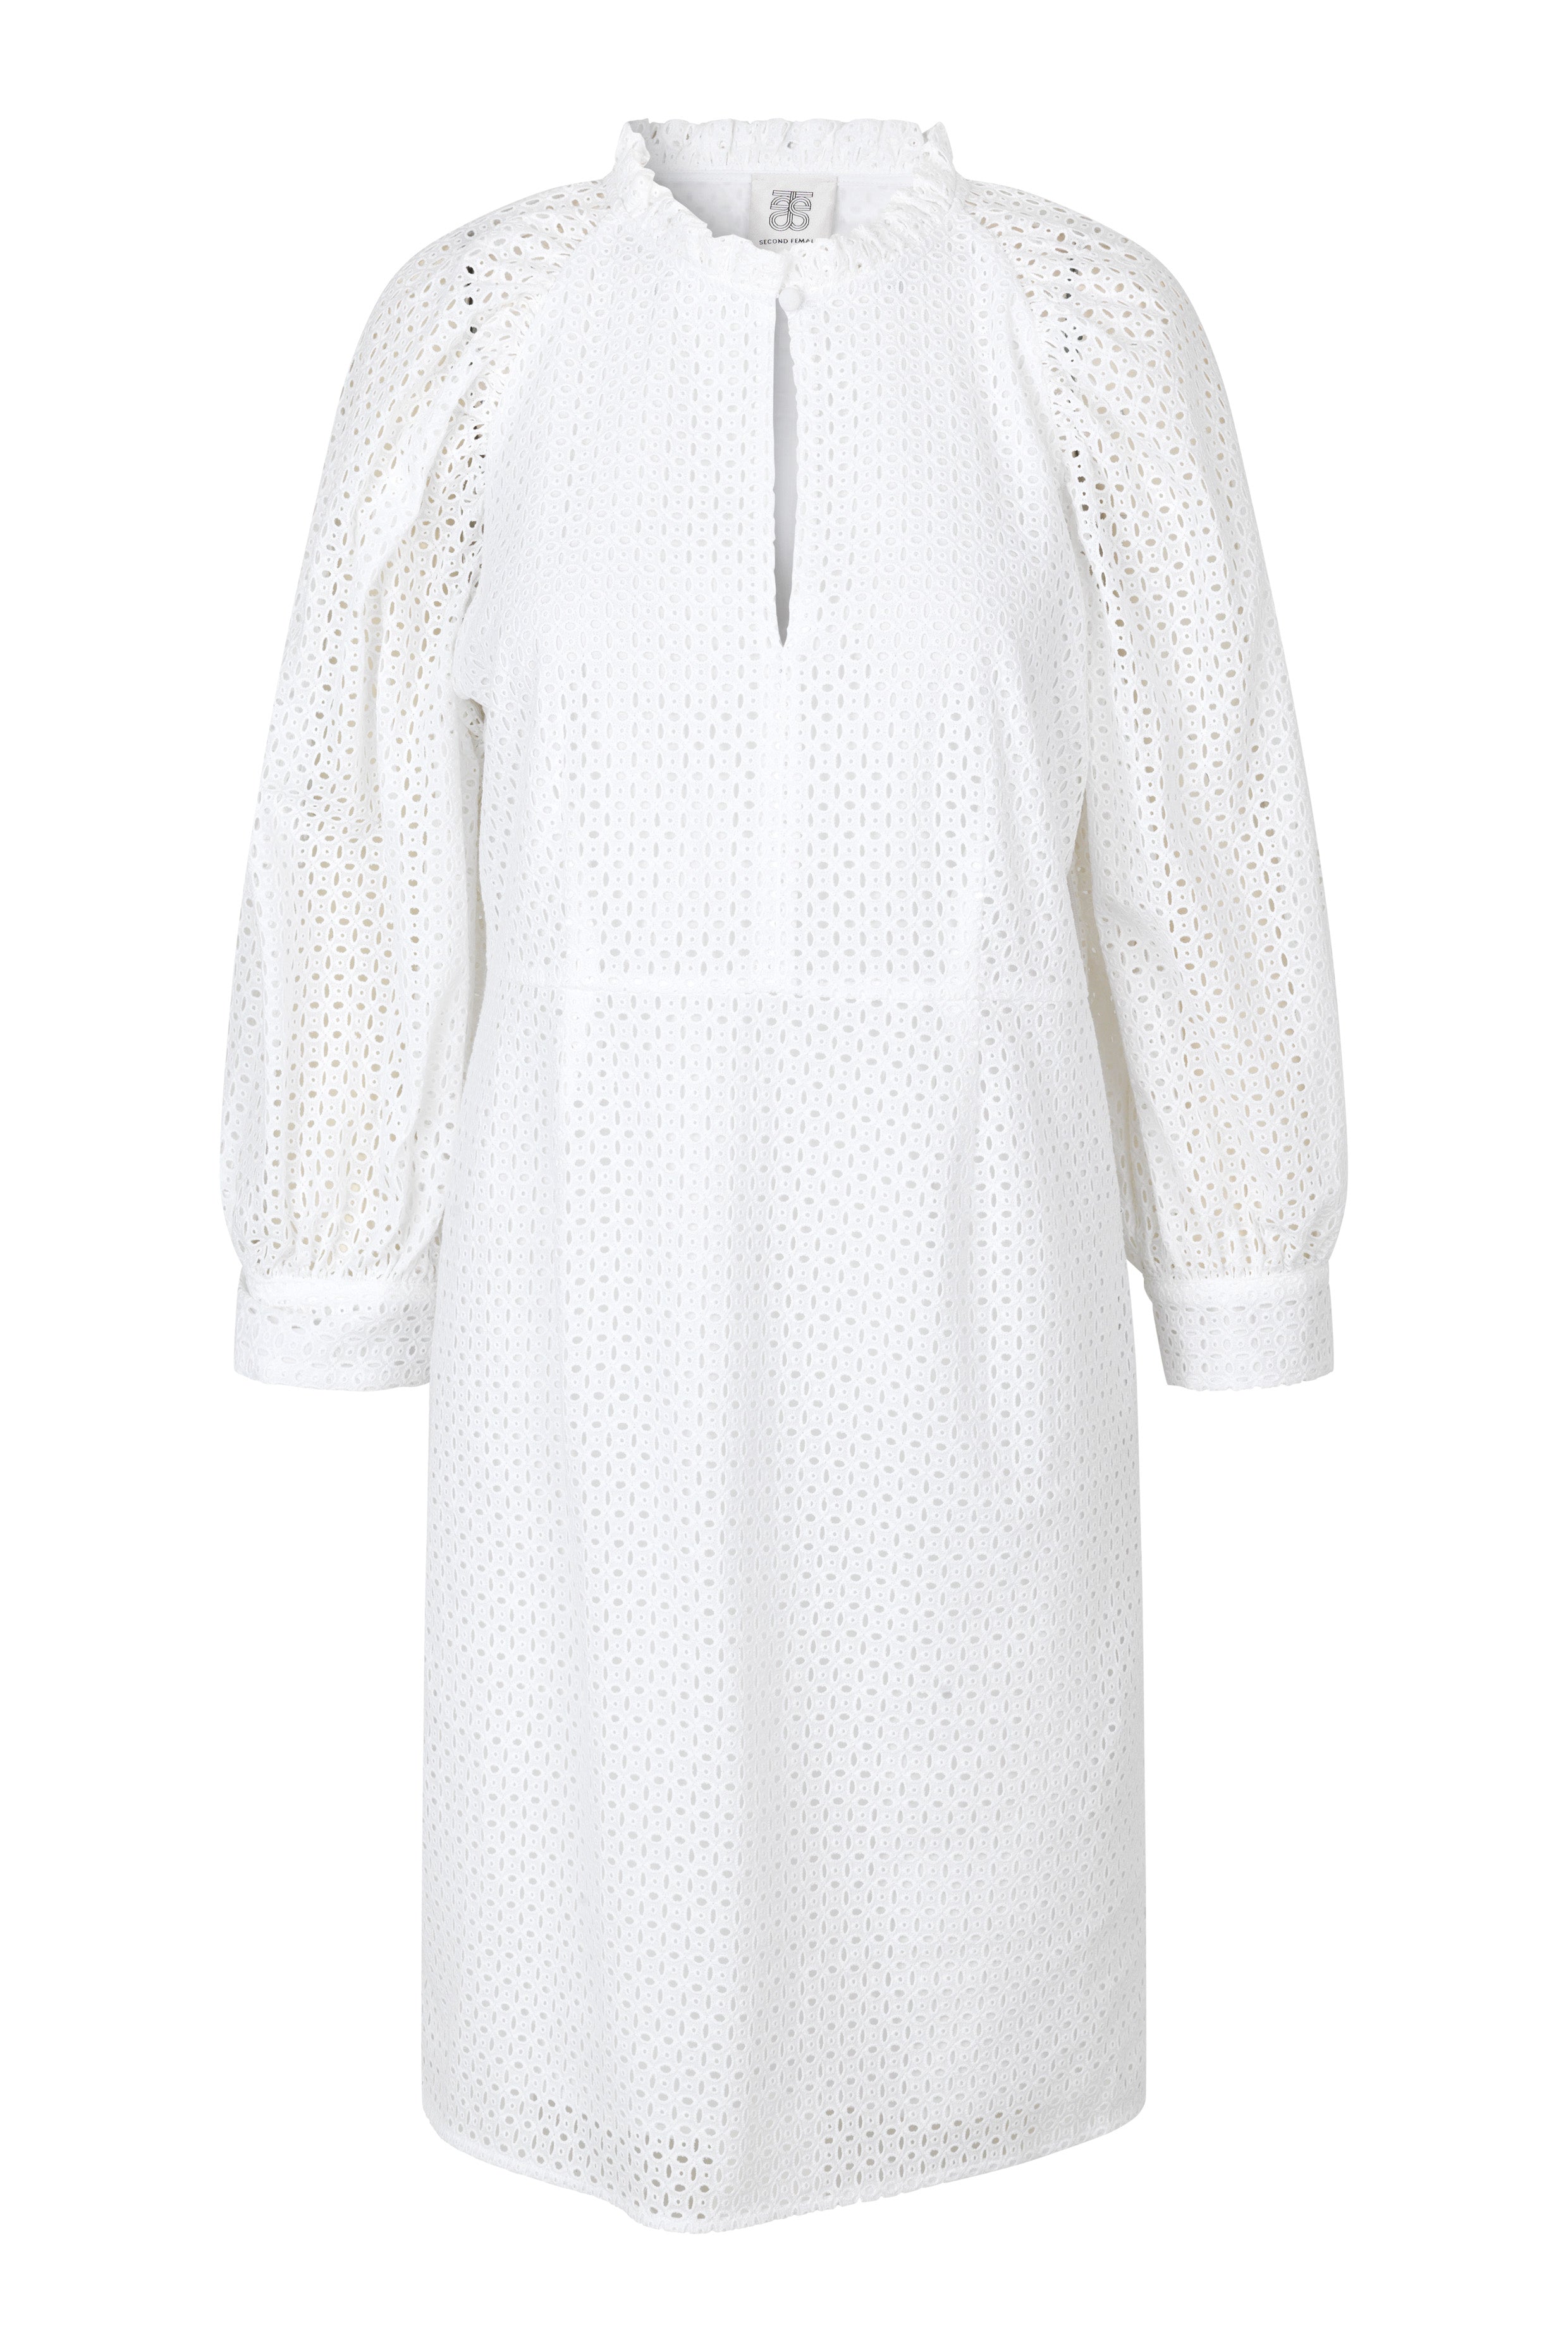 Calendula Dress - White